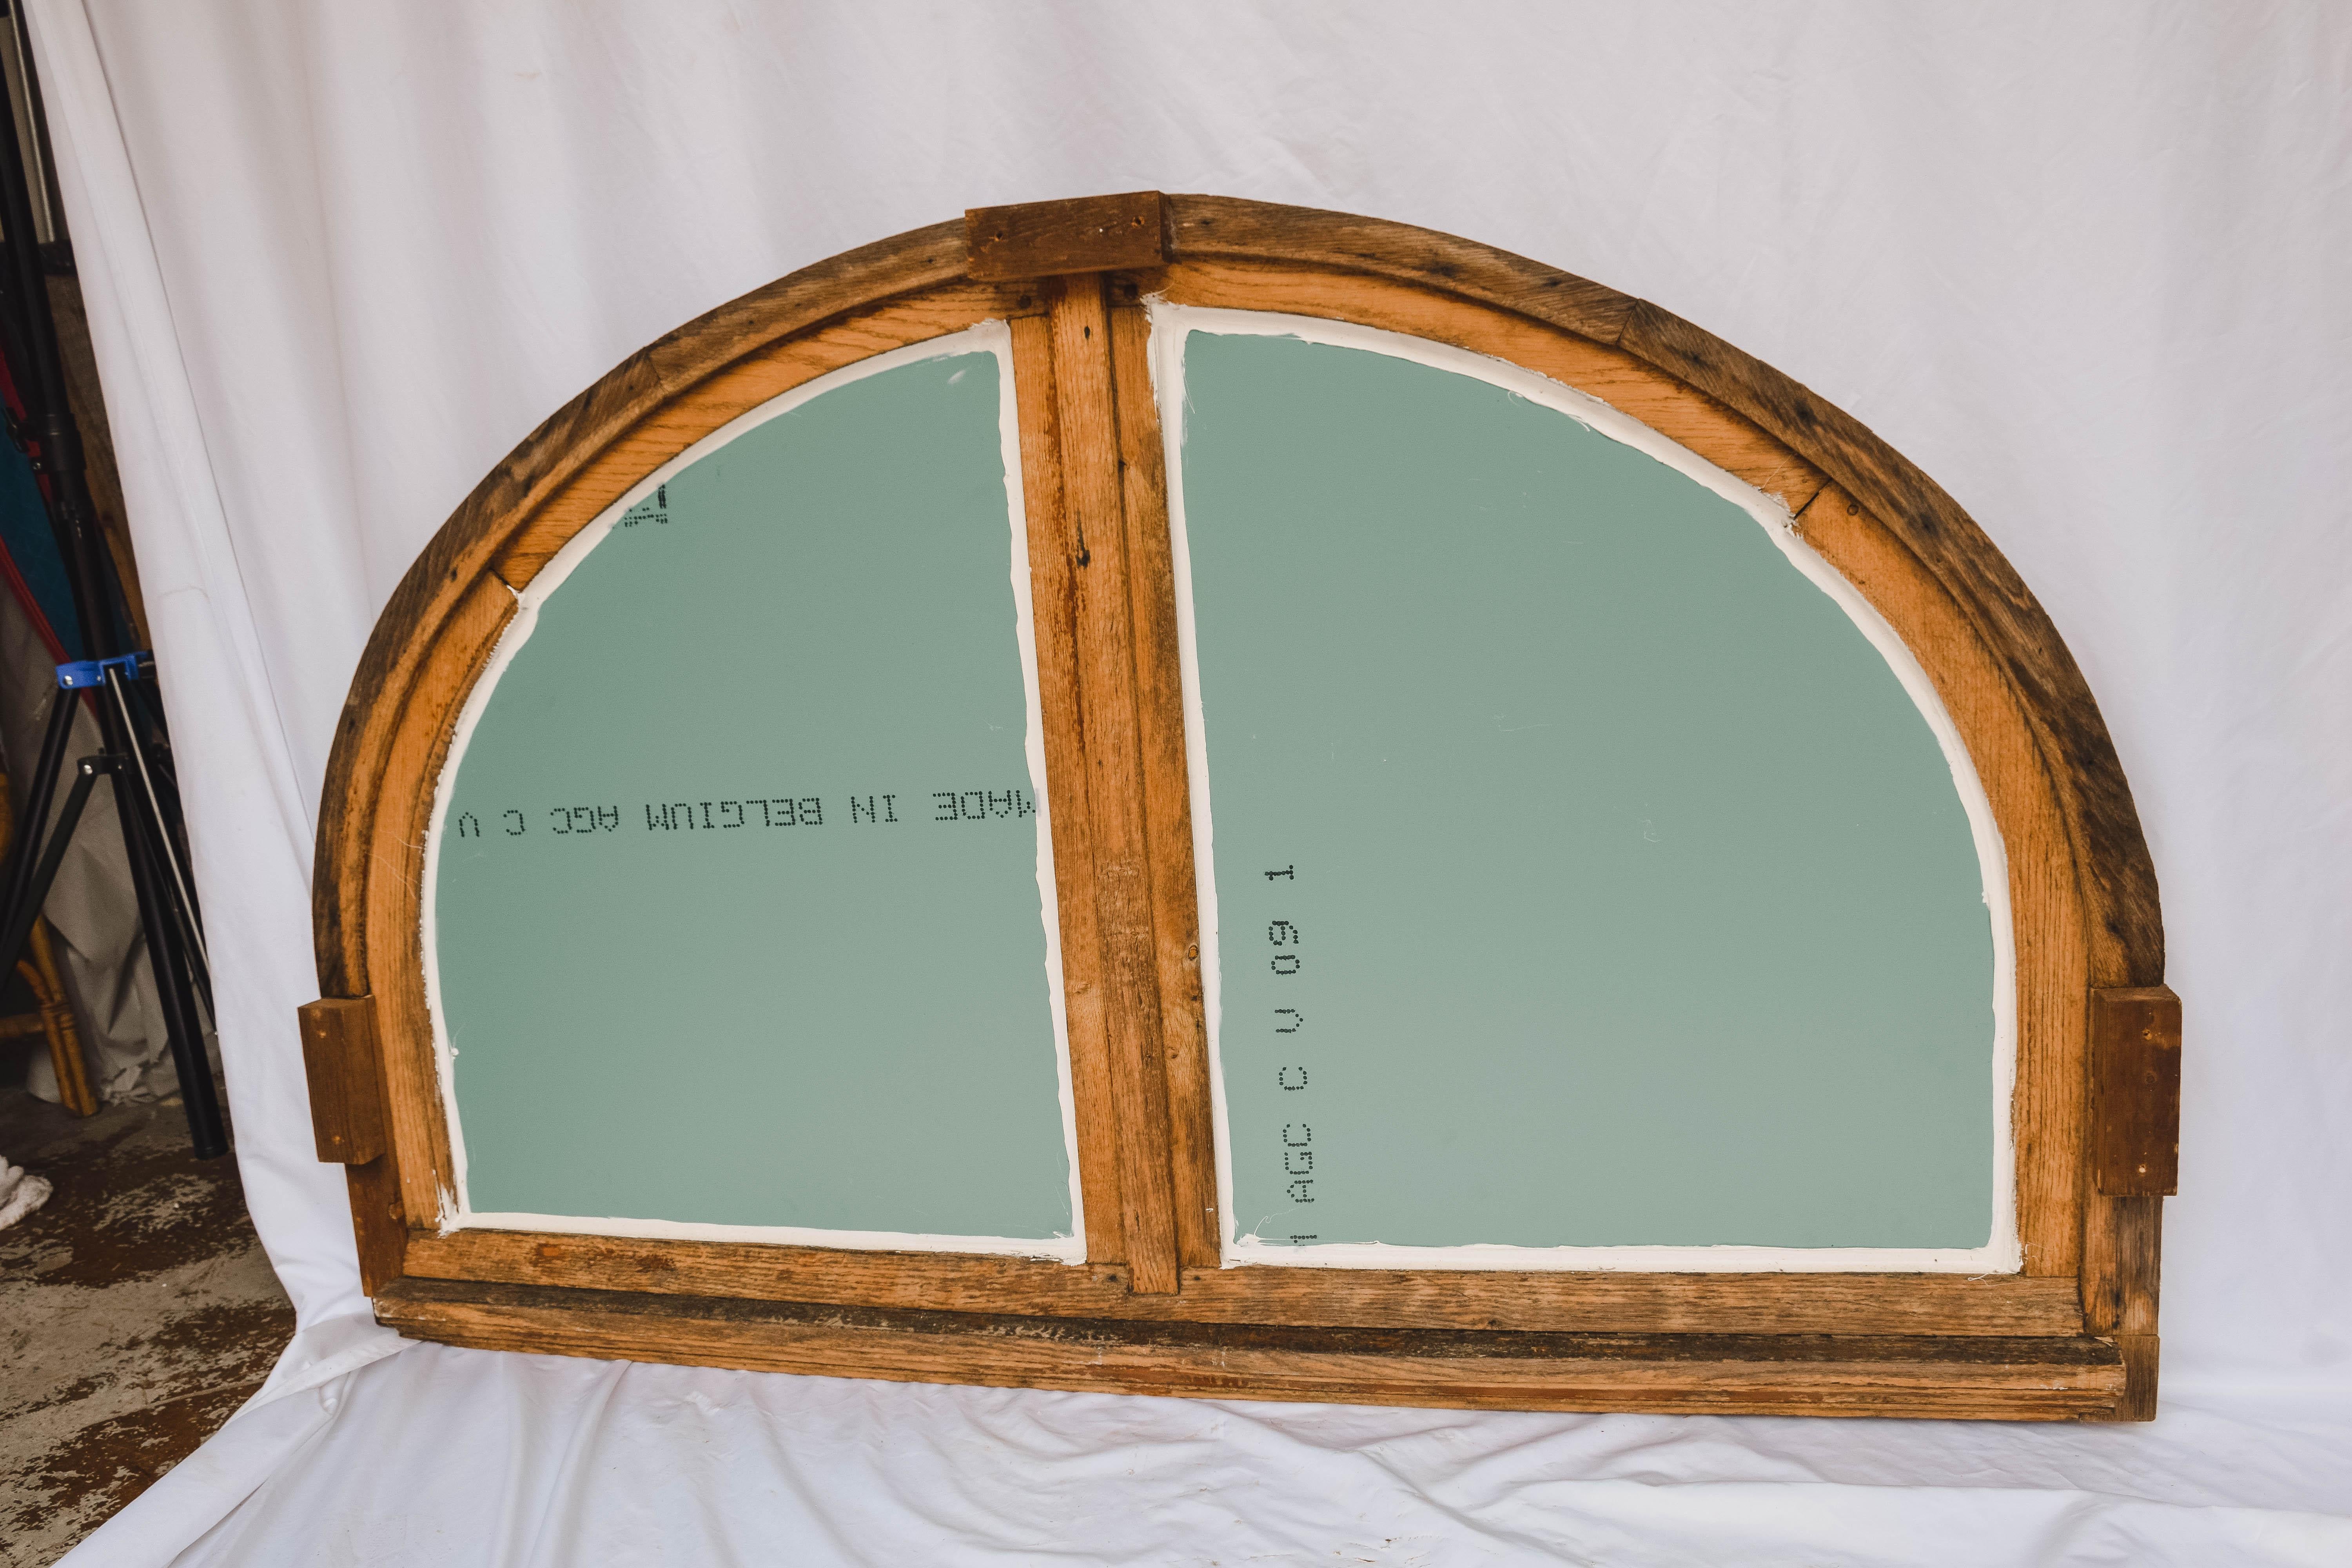 Dieser große antike französische Fensterflügel aus bemaltem Holz, der in Frankreich gefunden wurde, ist als Spiegel umfunktioniert worden. Dieses wunderschöne antike französische Halbmond-Fenster/Spiegel besteht aus einem bemalten Holzflügel, der in